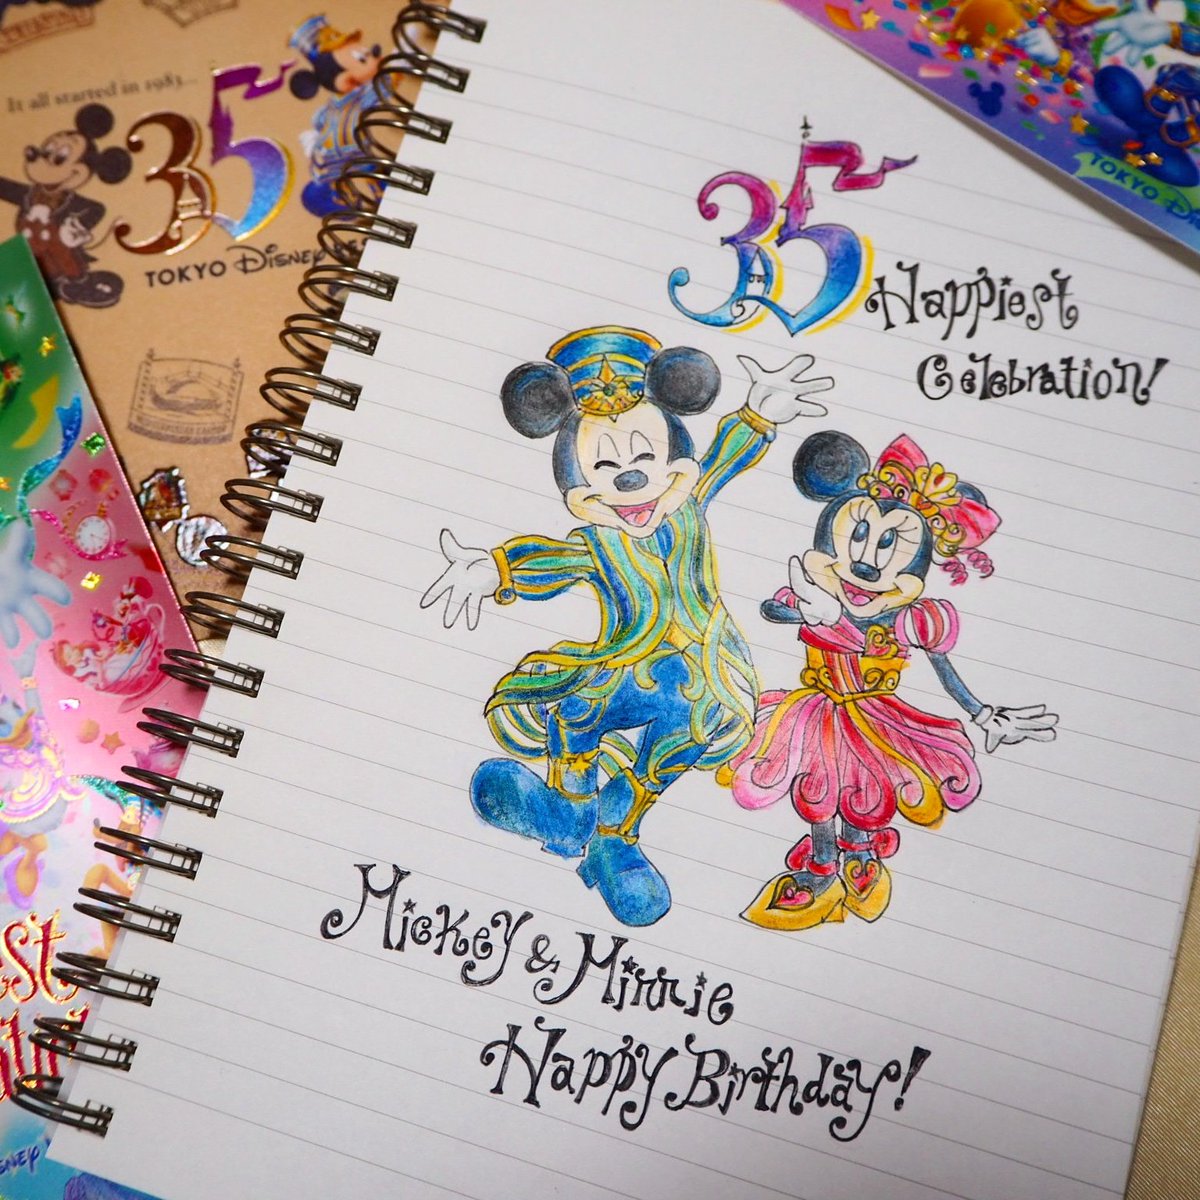 森麻美 Asamimori ミッキー ミニー ハッピーバースデー 11月18日はお誕生日 おめでとう 記念にイラスト描きました ミッキーマウス誕生日 ミニーハッピーバースデー 誕生日 イラスト ディズニー